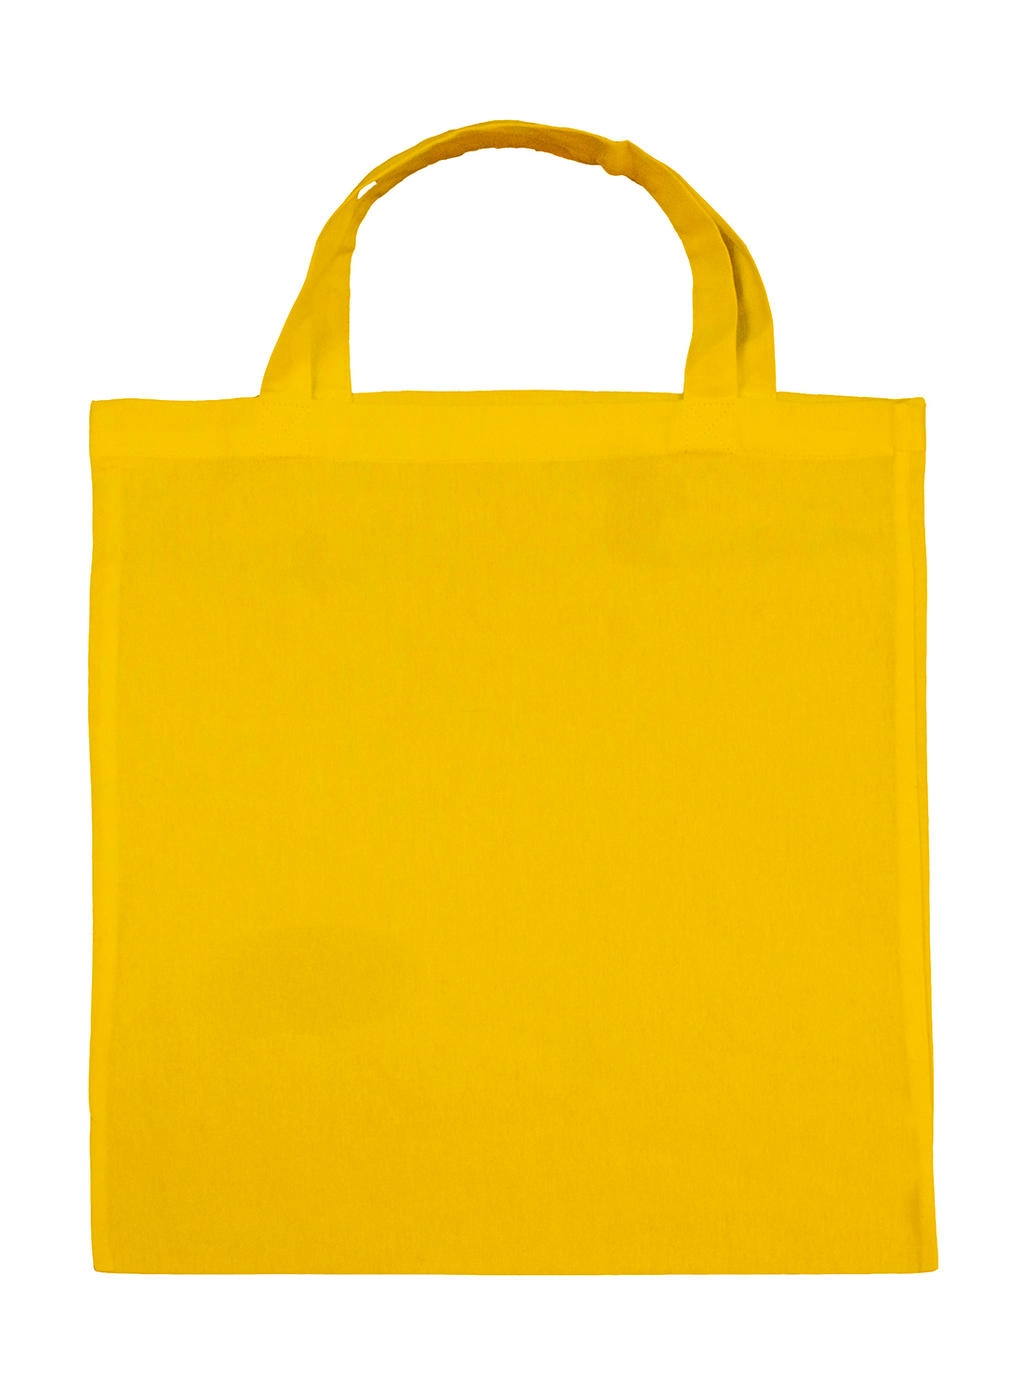 Cotton Shopper SH zum Besticken und Bedrucken in der Farbe Yellow mit Ihren Logo, Schriftzug oder Motiv.